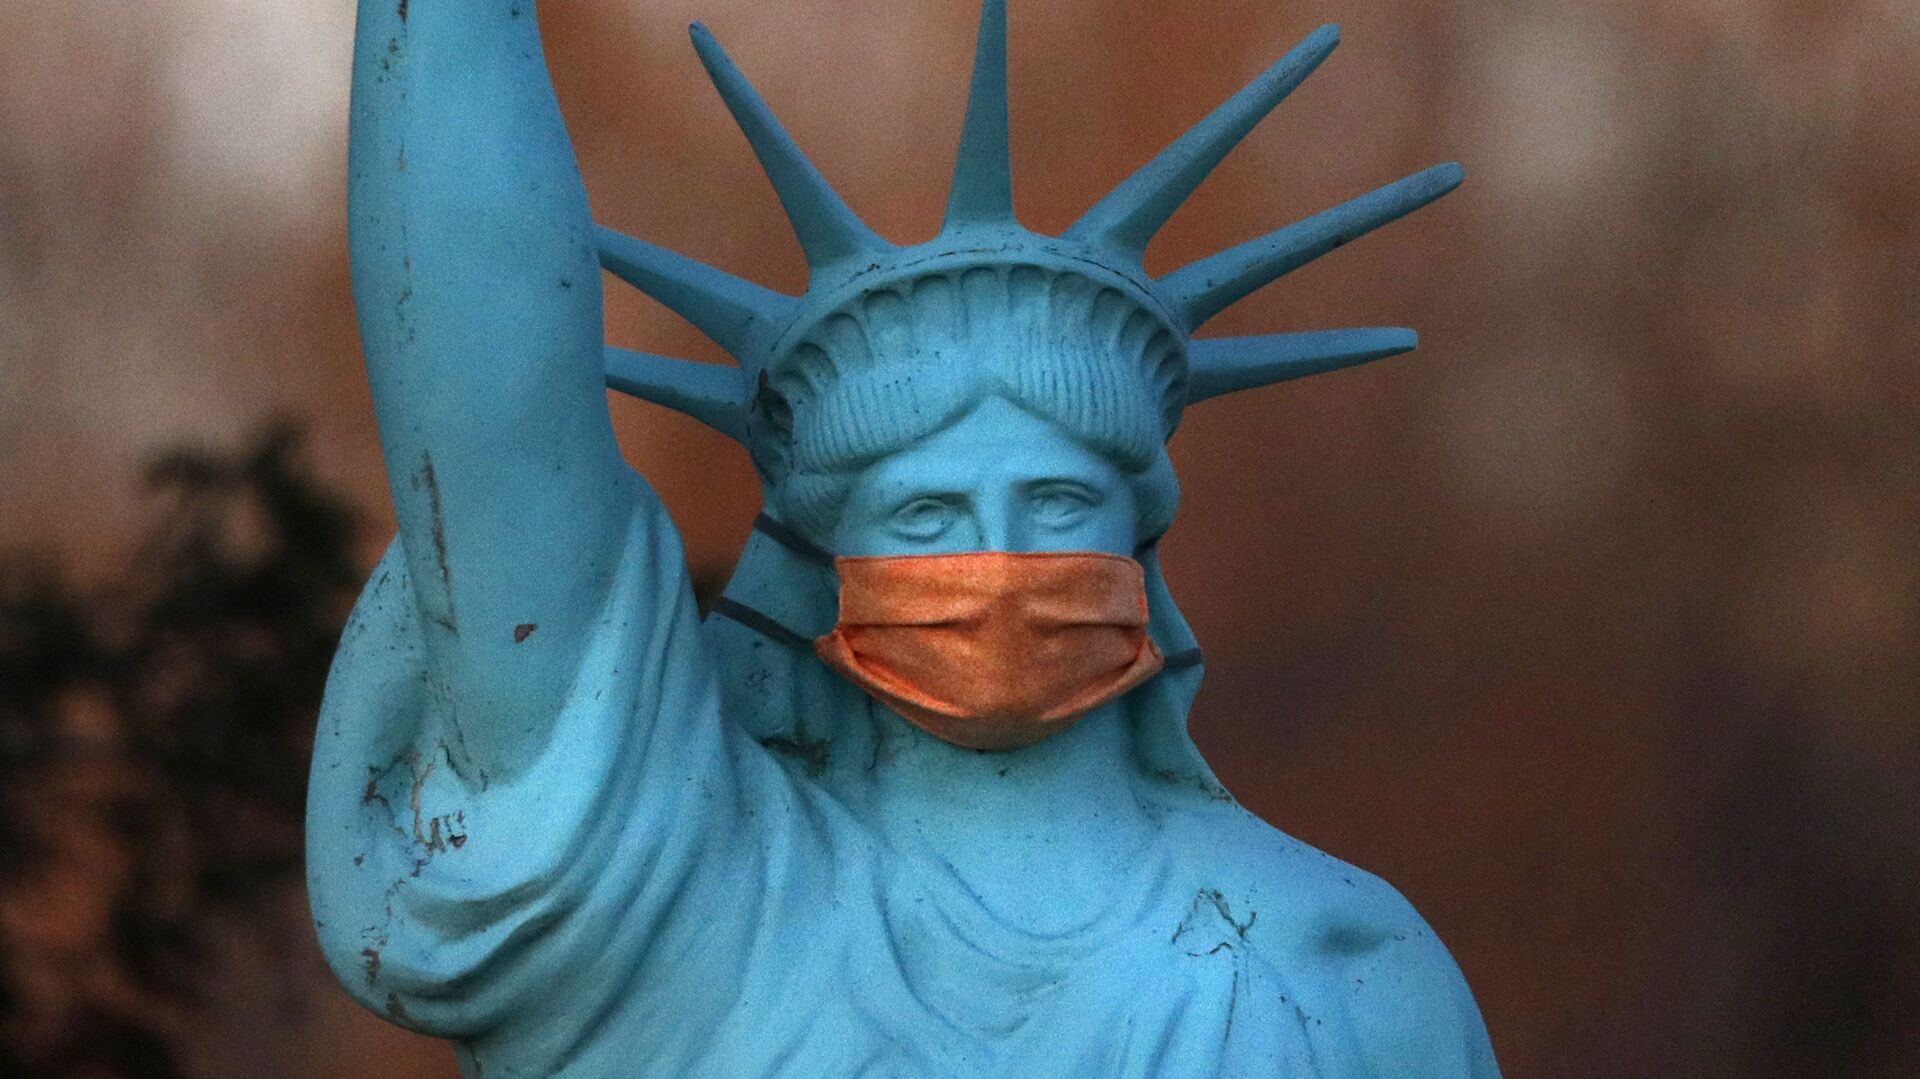 Реплика Статуи Свободы в защитной маске в штате Мэн, США - Sputnik Молдова, 1920, 08.03.2021